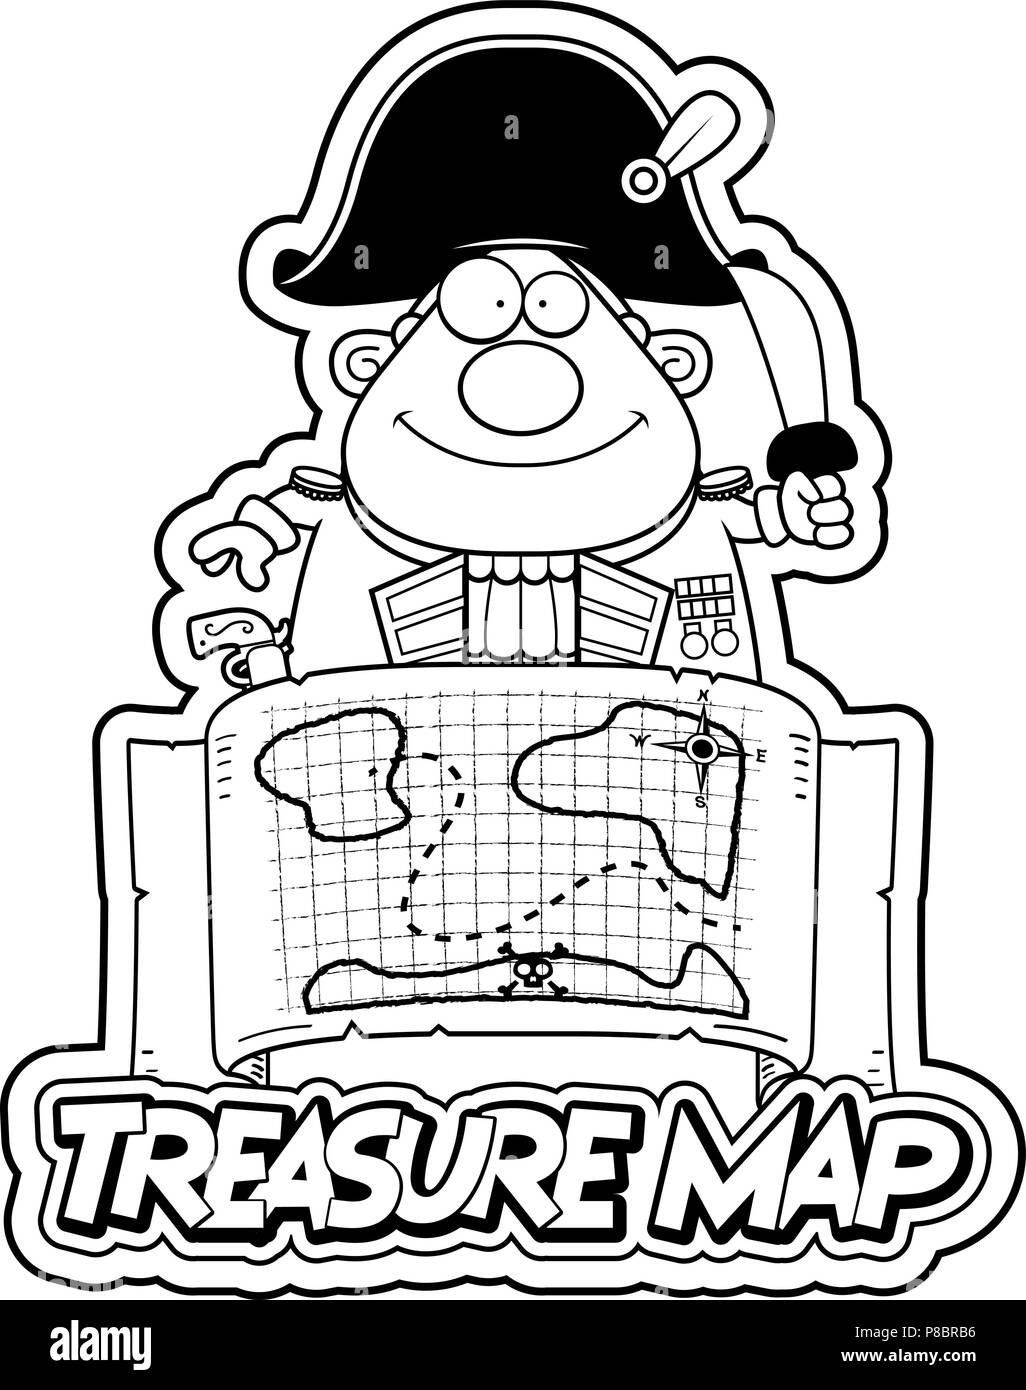 Un cartoon illustration d'un amiral britannique avec une carte au trésor la carte au trésor et de texte. Illustration de Vecteur